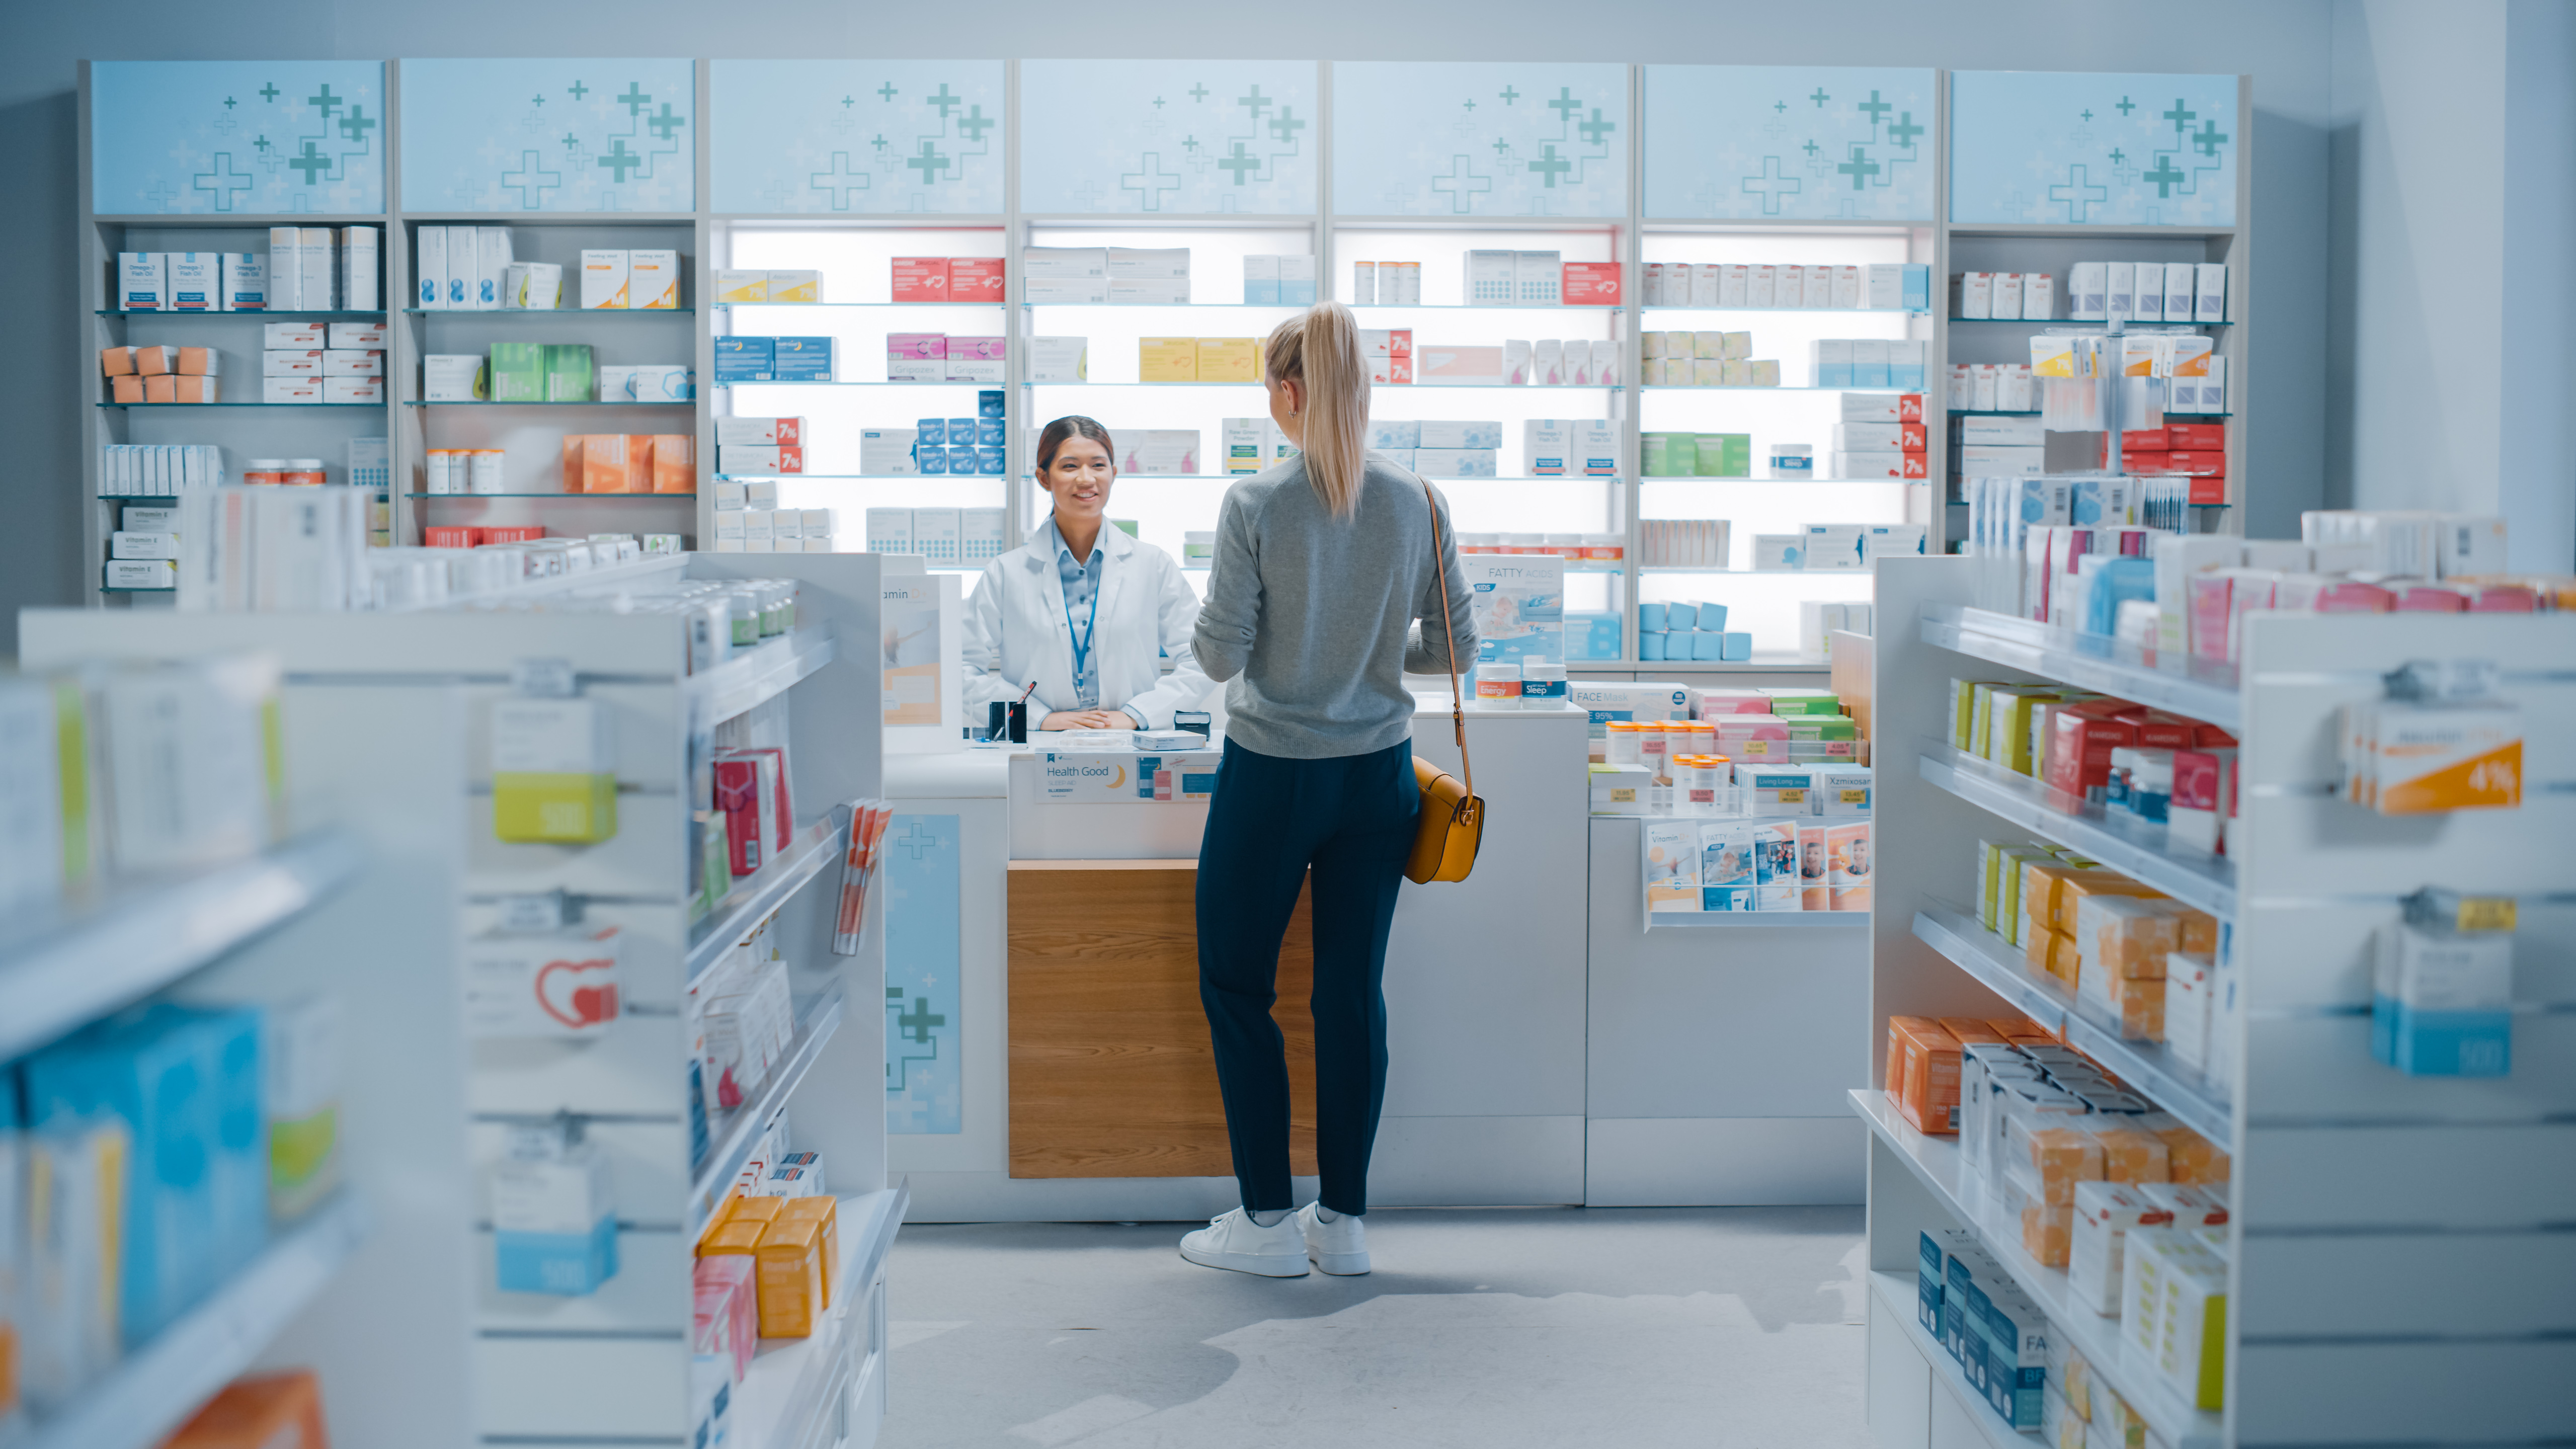 Pharmacy Drugstore.| Source: Shutterstock